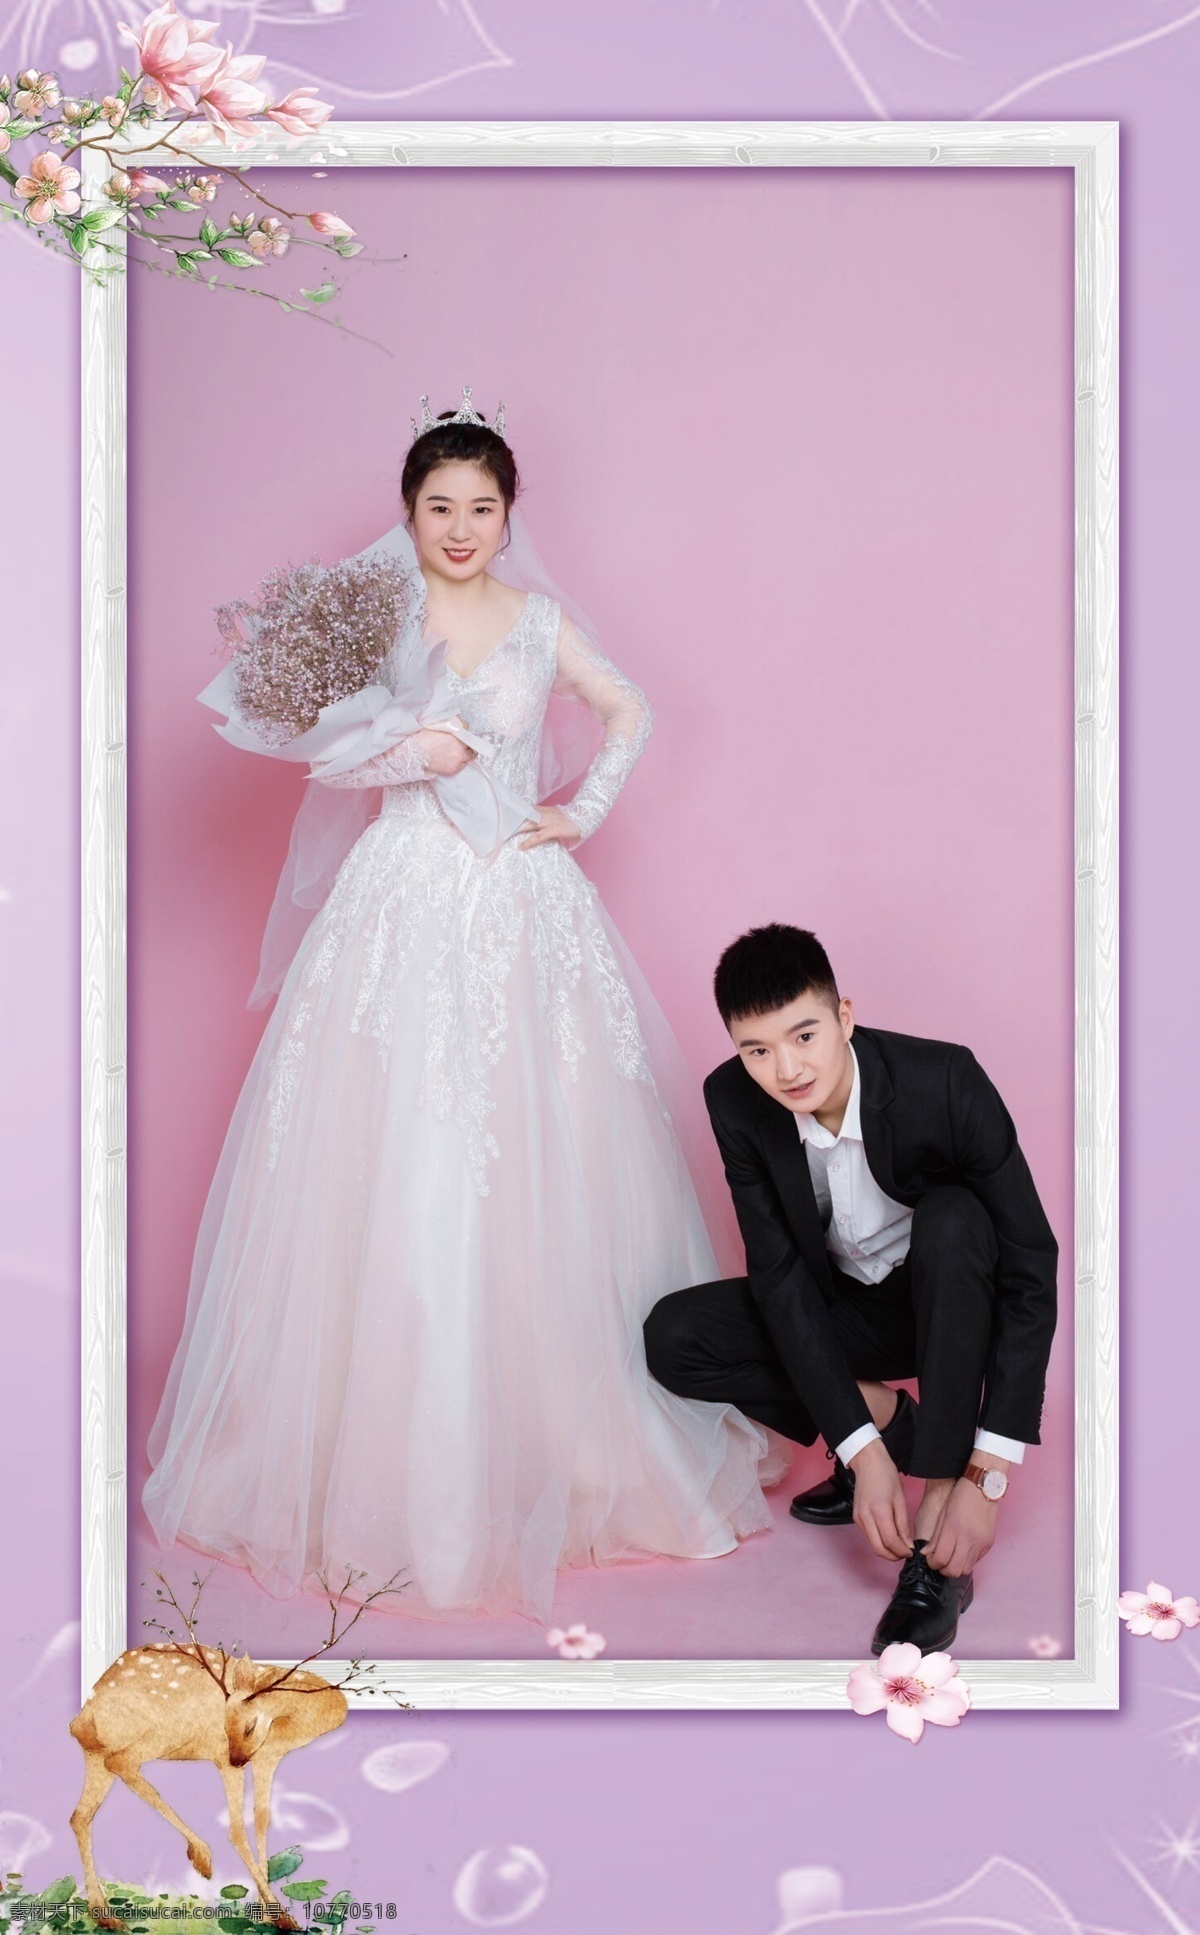 粉 紫色 婚礼 照片 墙 婚礼照片 粉紫色婚礼 婚礼背景 婚礼侧背景 婚礼设计